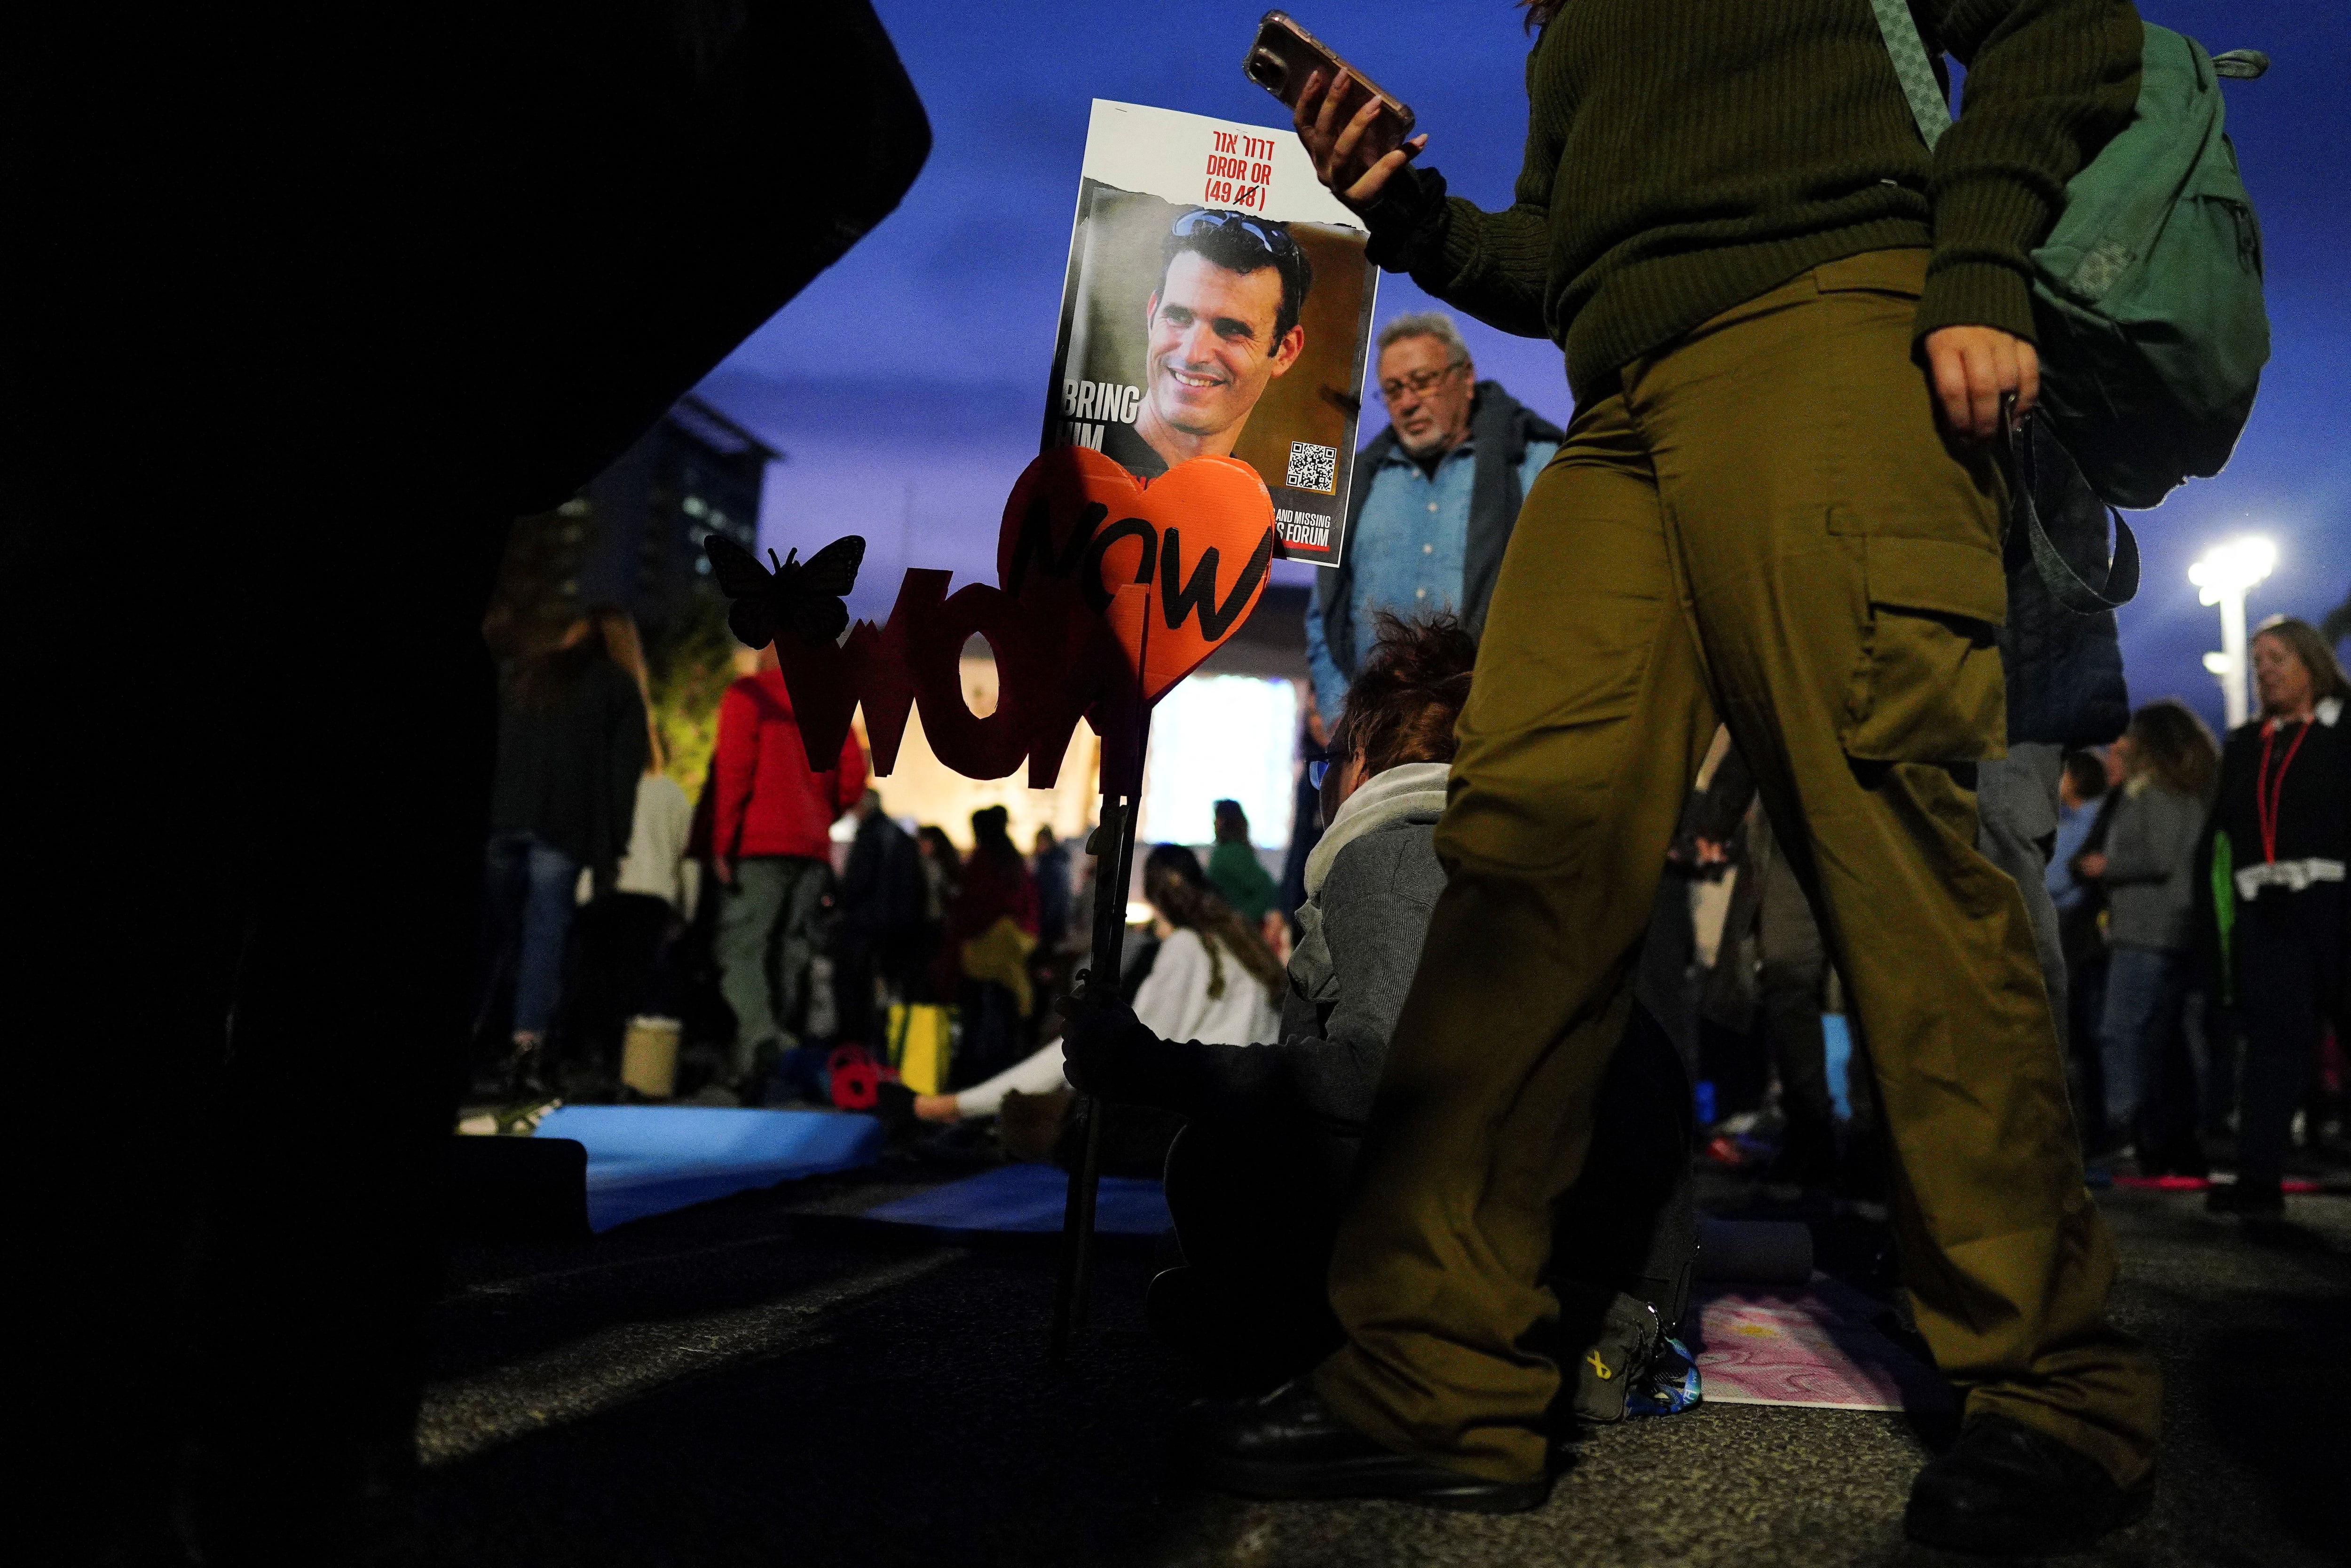 Familiares y partidarios de Dror Or, de 49 años, que fue tomado como rehén el 7 de octubre, celebran el cumpleaños número 49 de Dror mientras está cautivo por el grupo islamista palestino Hamas en la Franja de Gaza, en un evento en Tel Aviv, Israel, el 18 de enero. 2024. REUTERS/Alexandre Meneghini